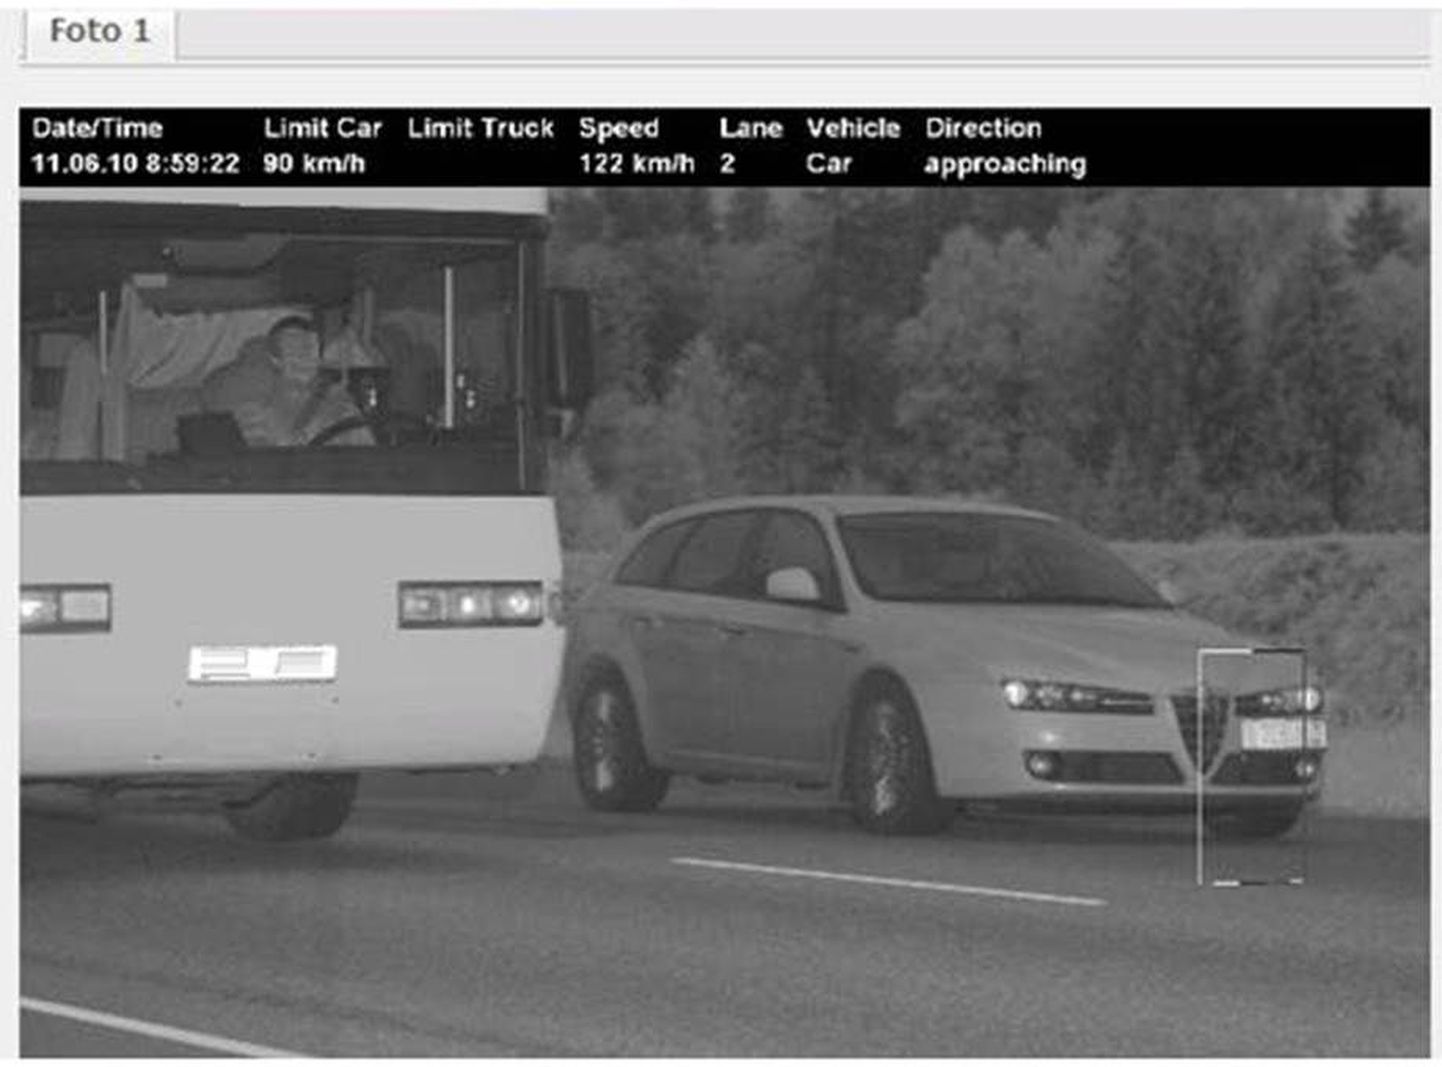 Näide kiiruskaamera fotost, kui kiirust on ületanud möödasõitu tegev auto. Kiiruse ületajat markeerib valge ristkülik (parempoolsel autol).